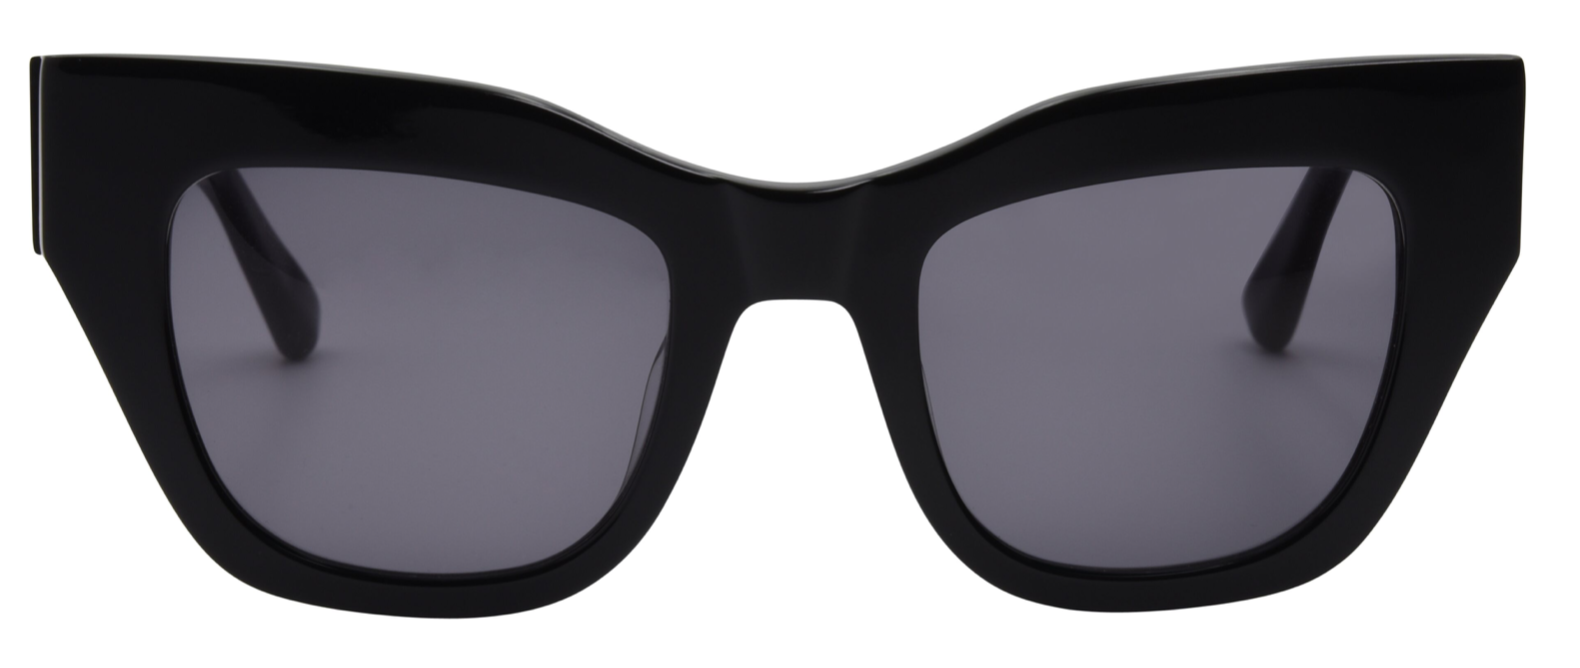 Black soft square glasses